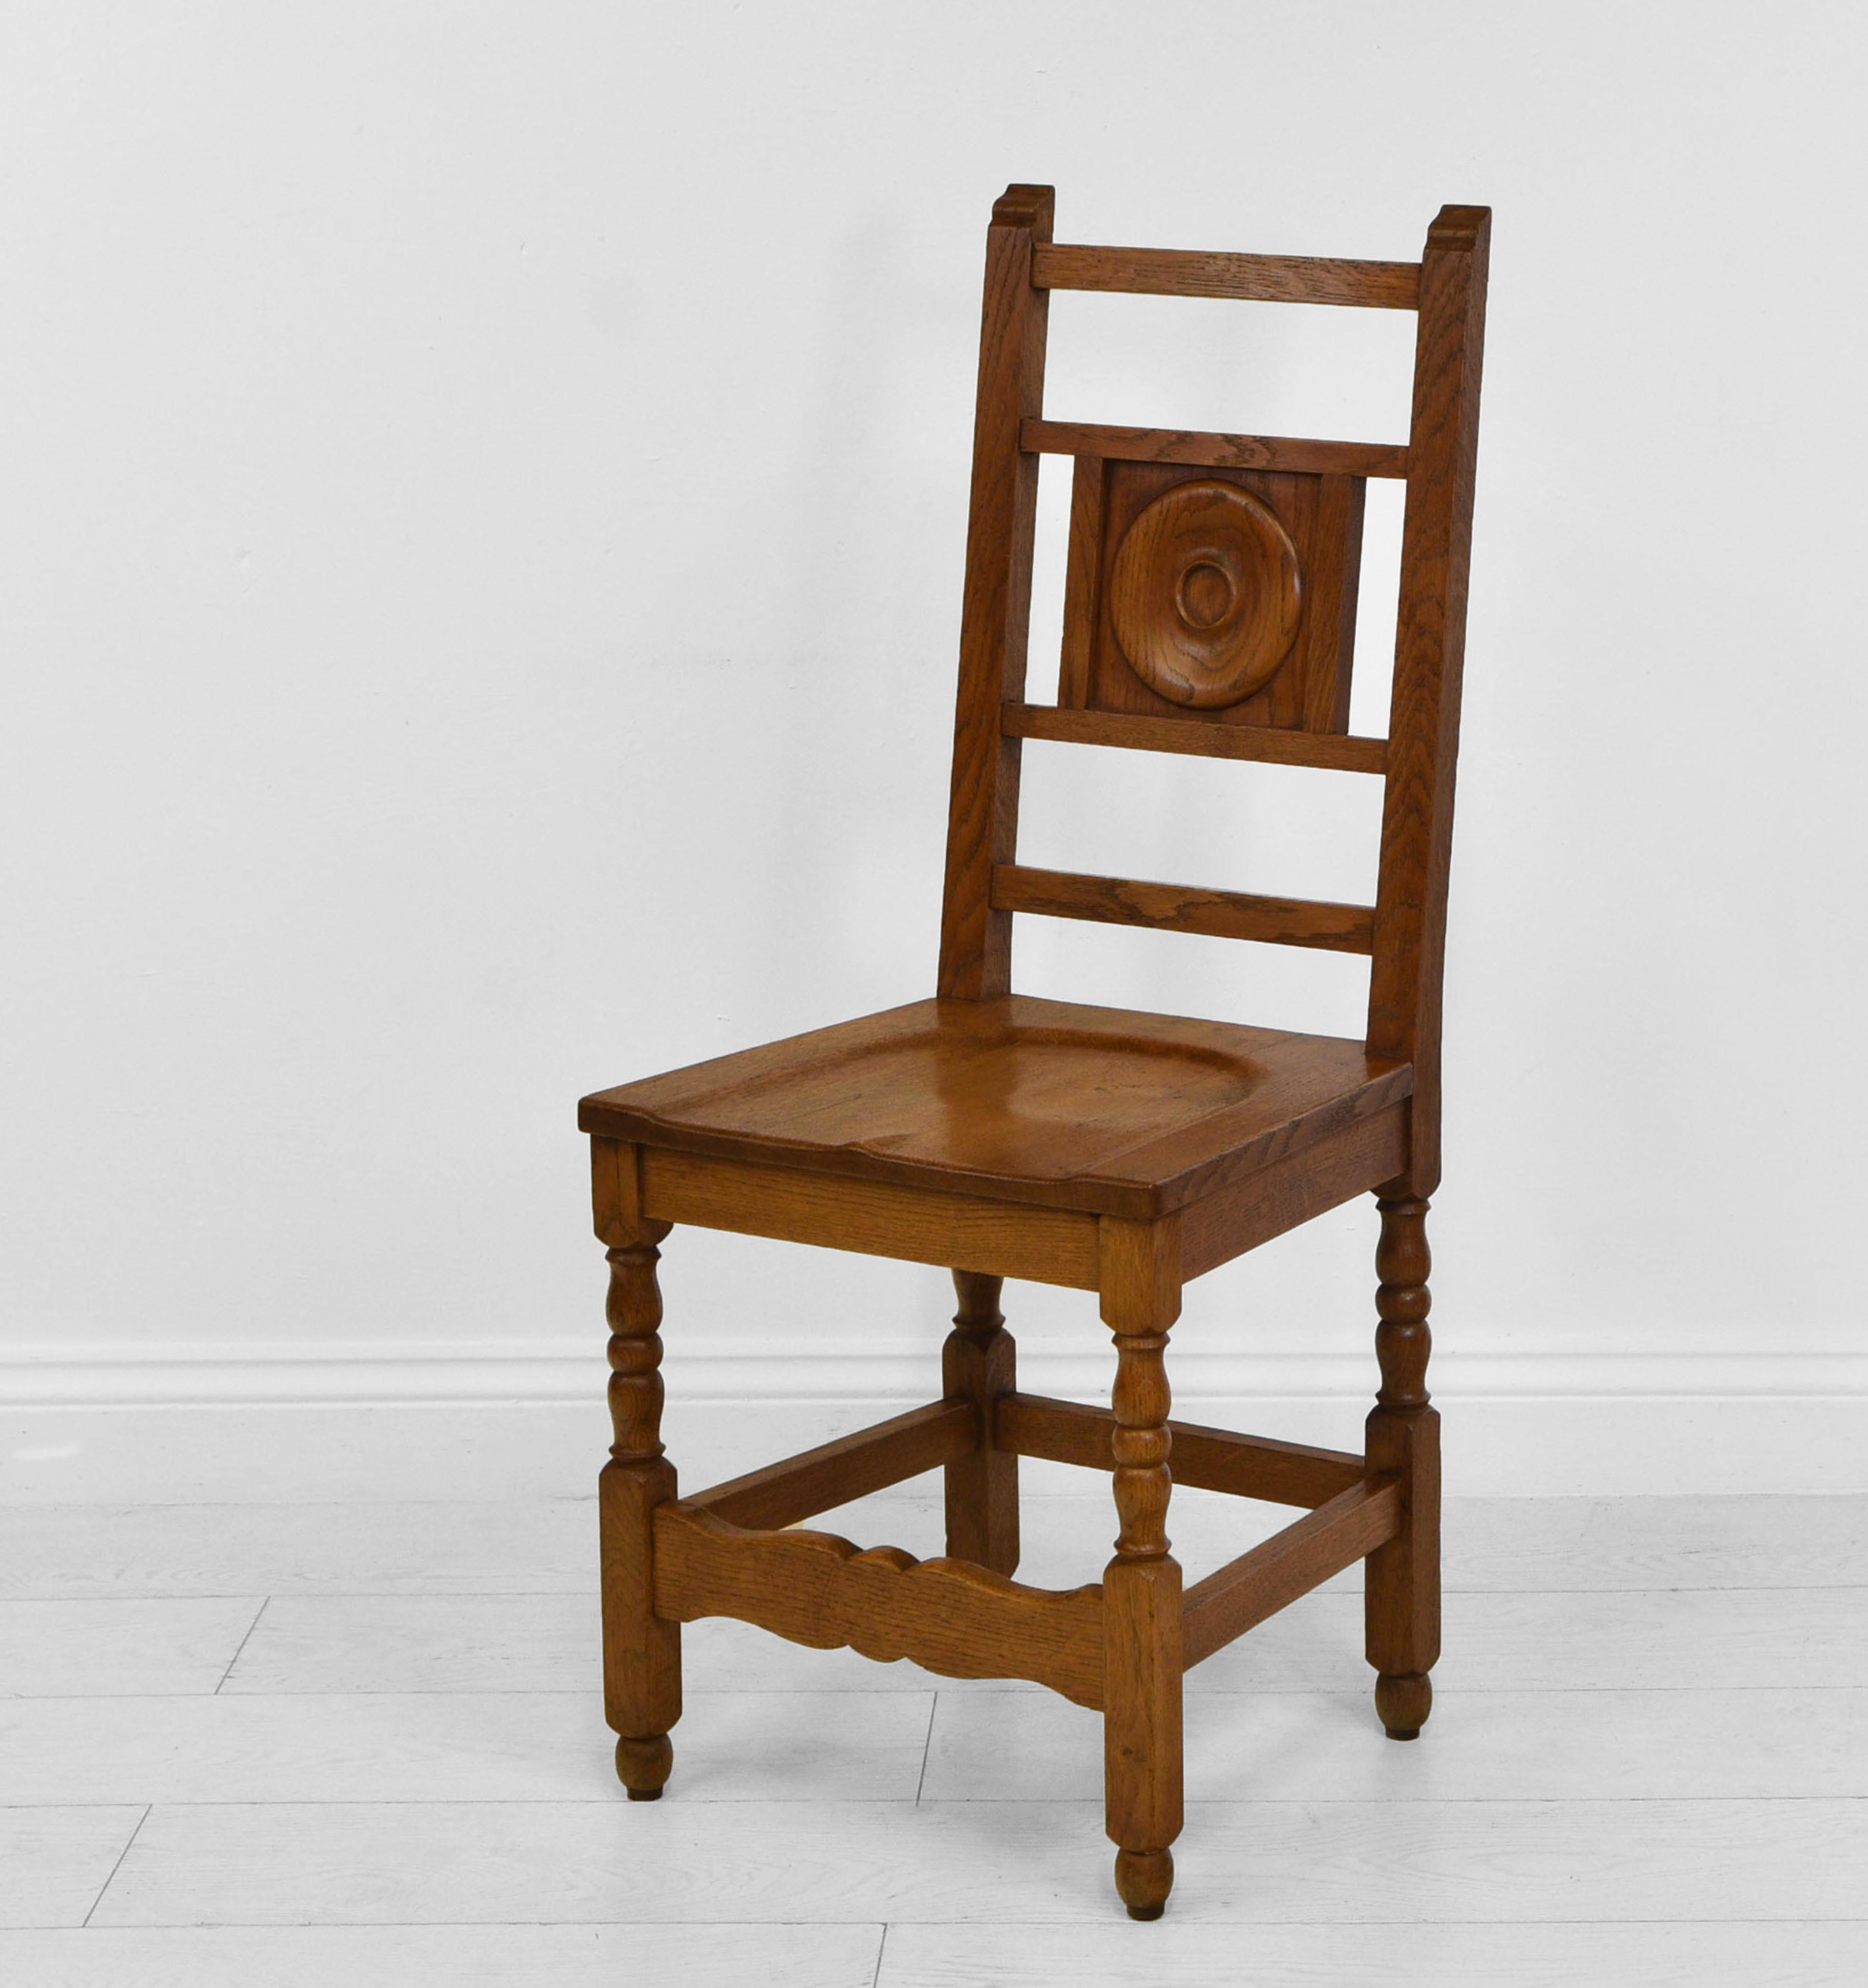 Ensemble de huit chaises en chêne à la manière de Heal's, provenant probablement de l'Université de Cambridge. Circa 1930.

Les chaises sont fabriquées en chêne massif et ont des assises en forme, ce qui permet de s'asseoir confortablement. Dans